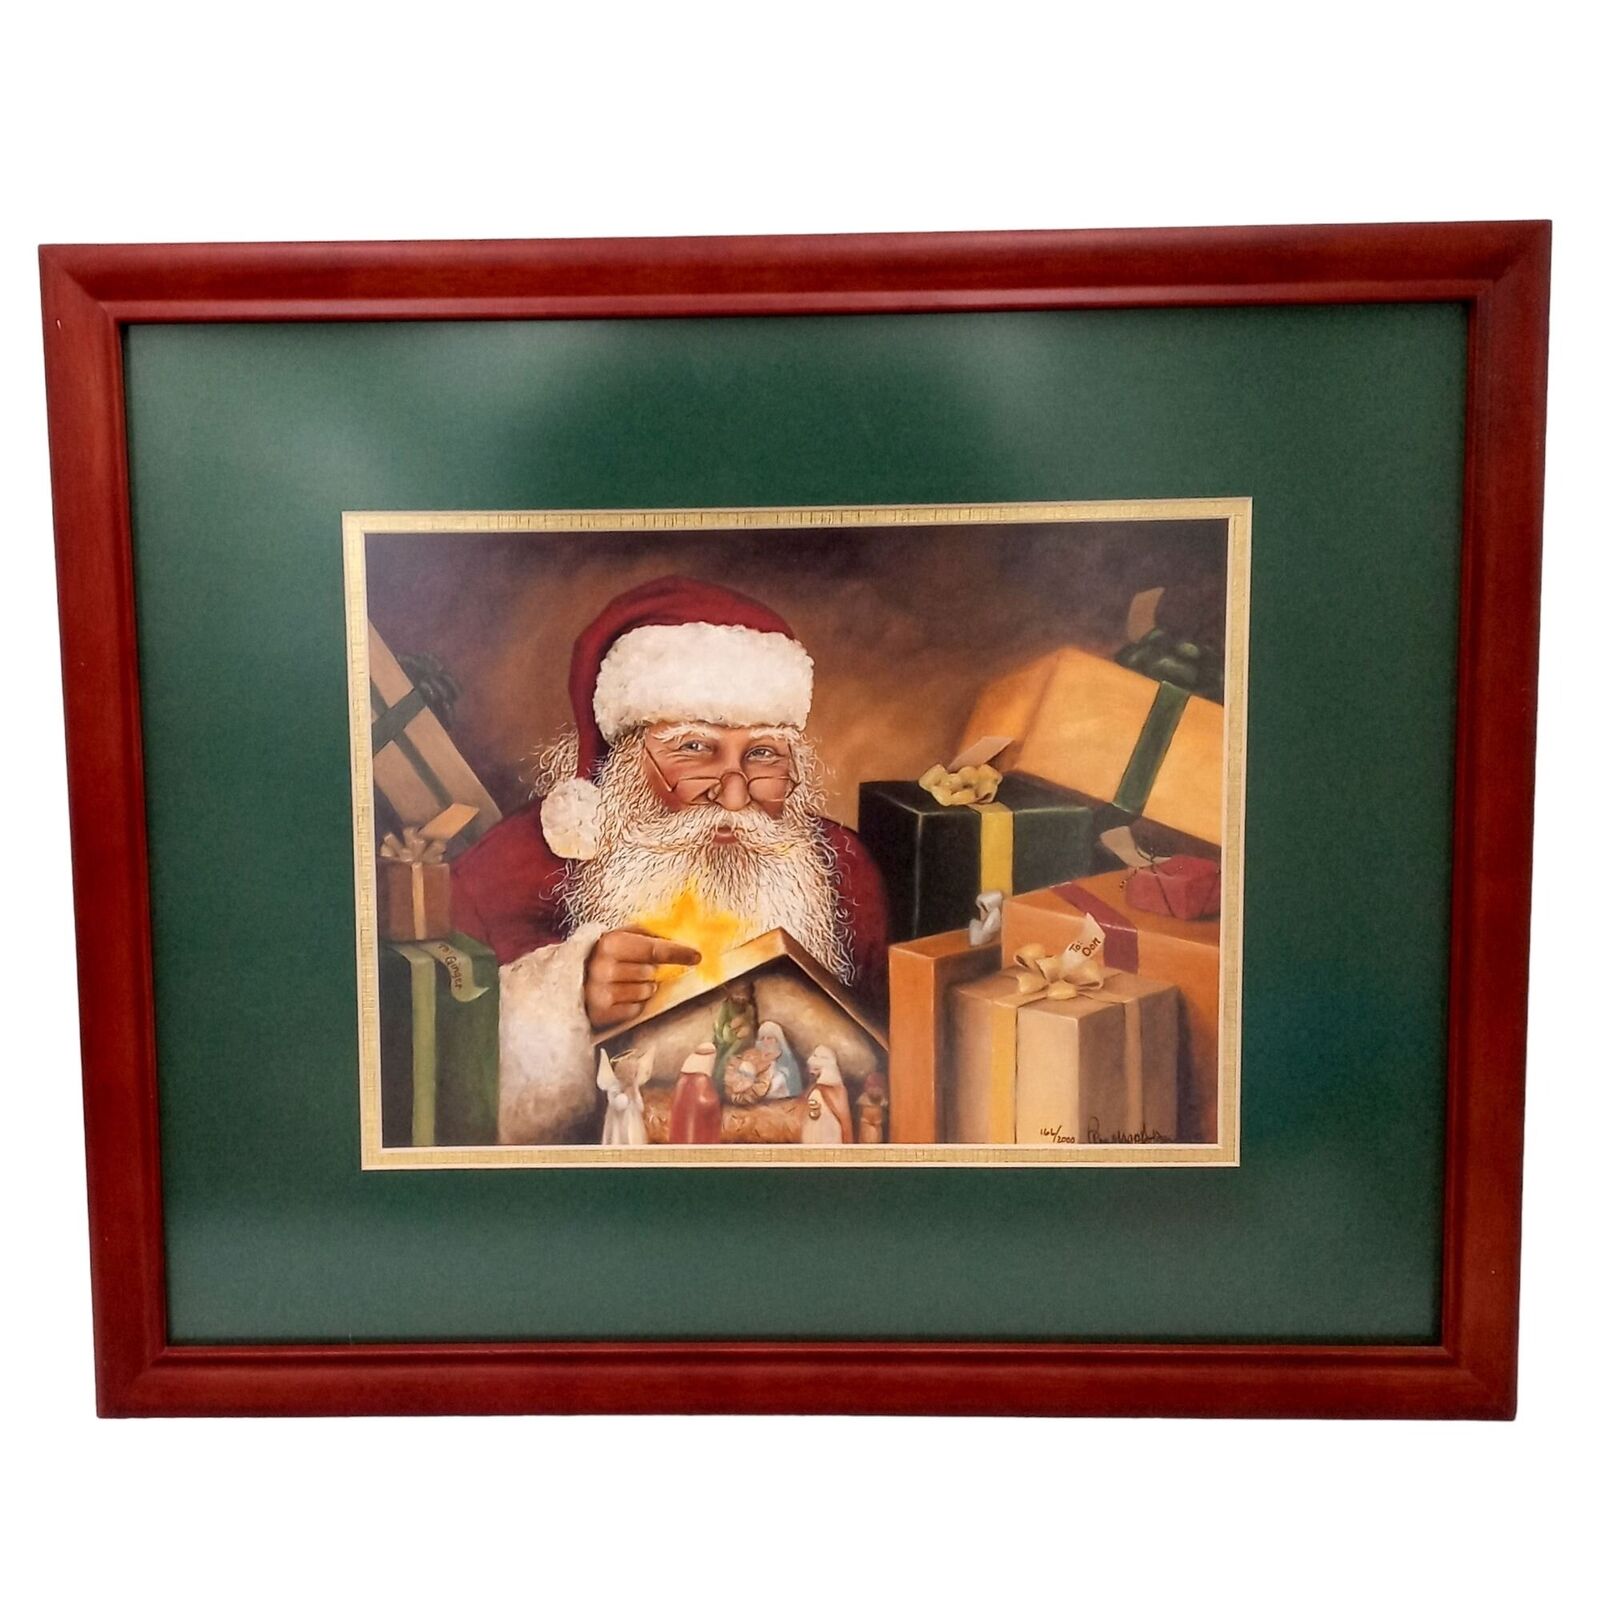 Santa Claus Nativity Framed Print Reason For The Season Rose Mary Montgomery